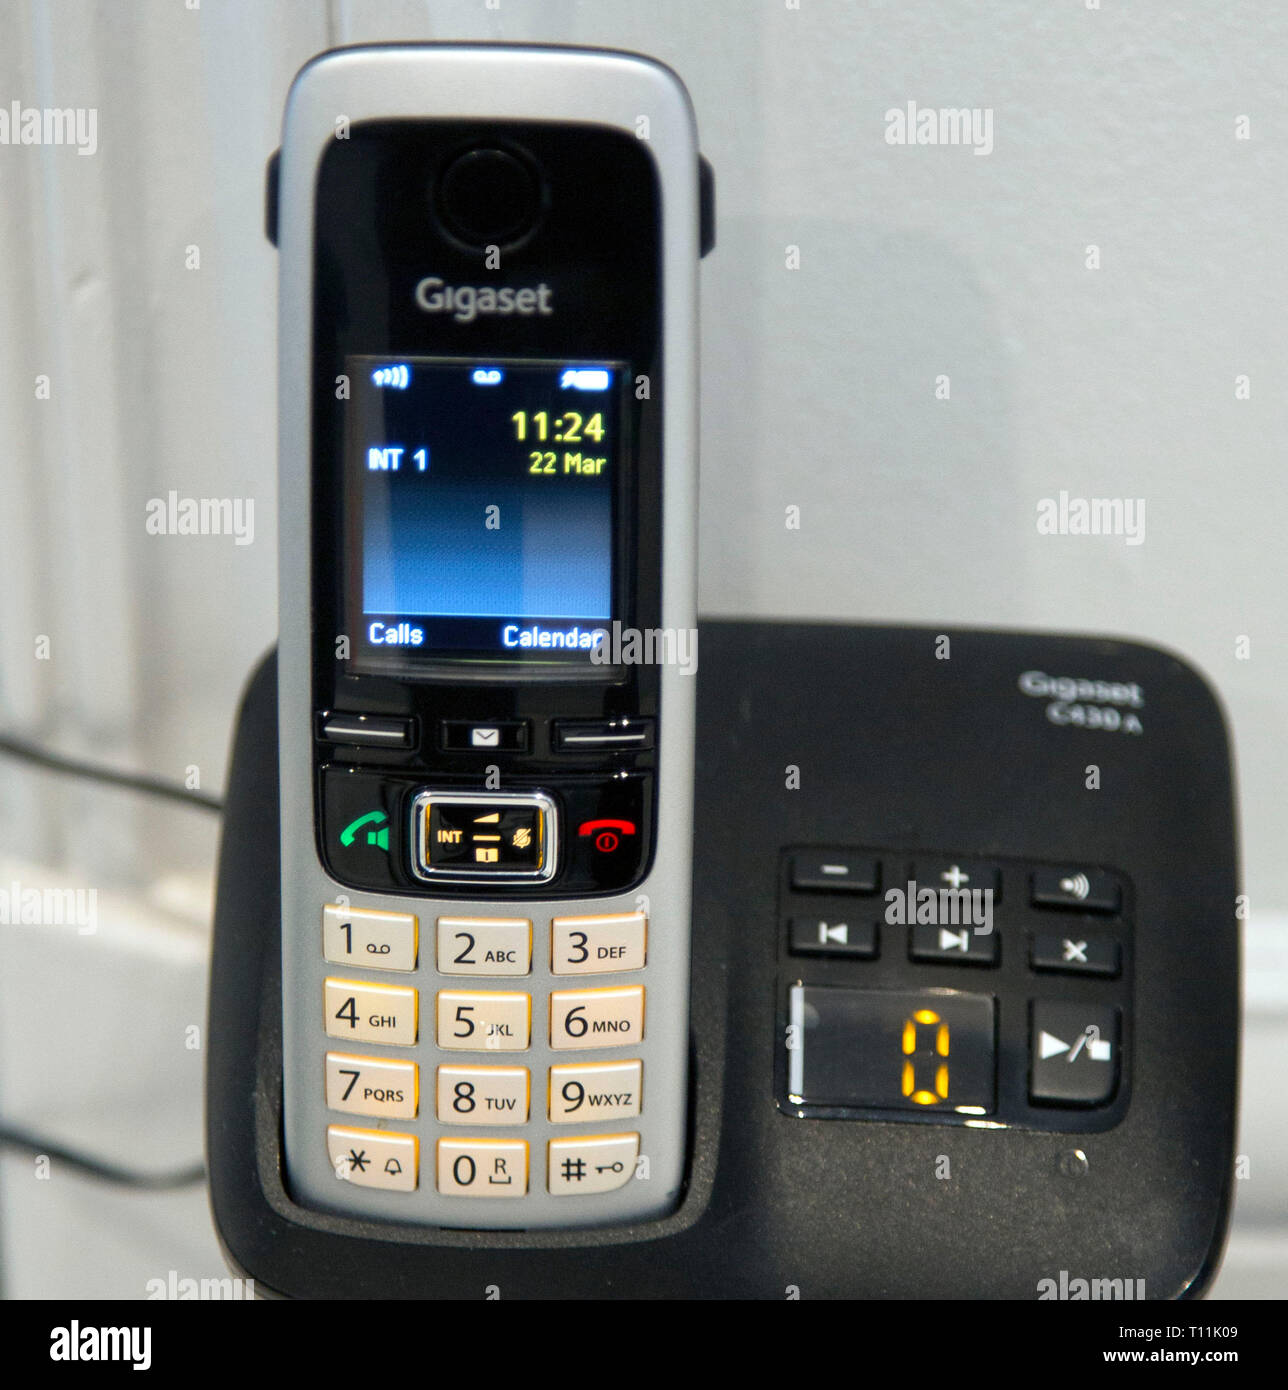 Gigaset téléphone fixe sans fil de la marque d'un téléphone avec